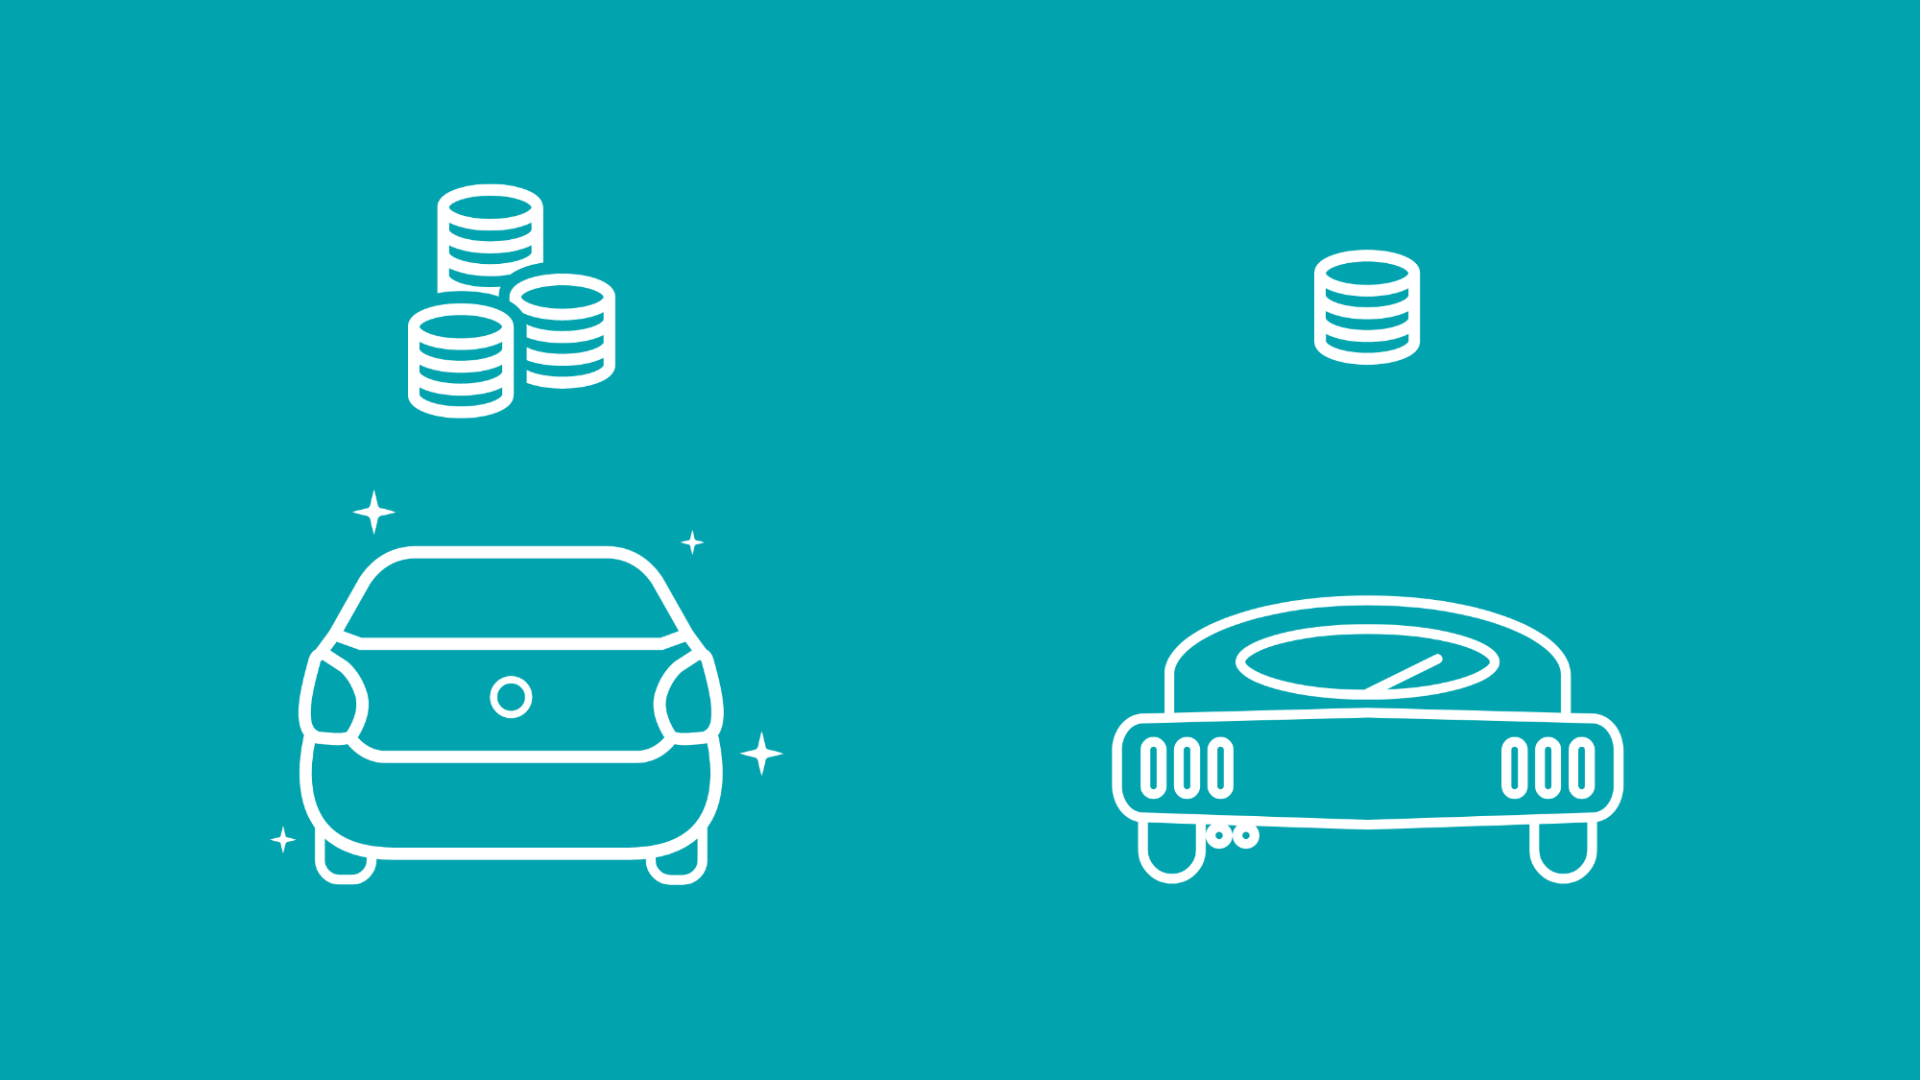 Auf dem Bild werden die Anschaffungskosten eines Elektroautos mit denen eines anderen verglichen. 